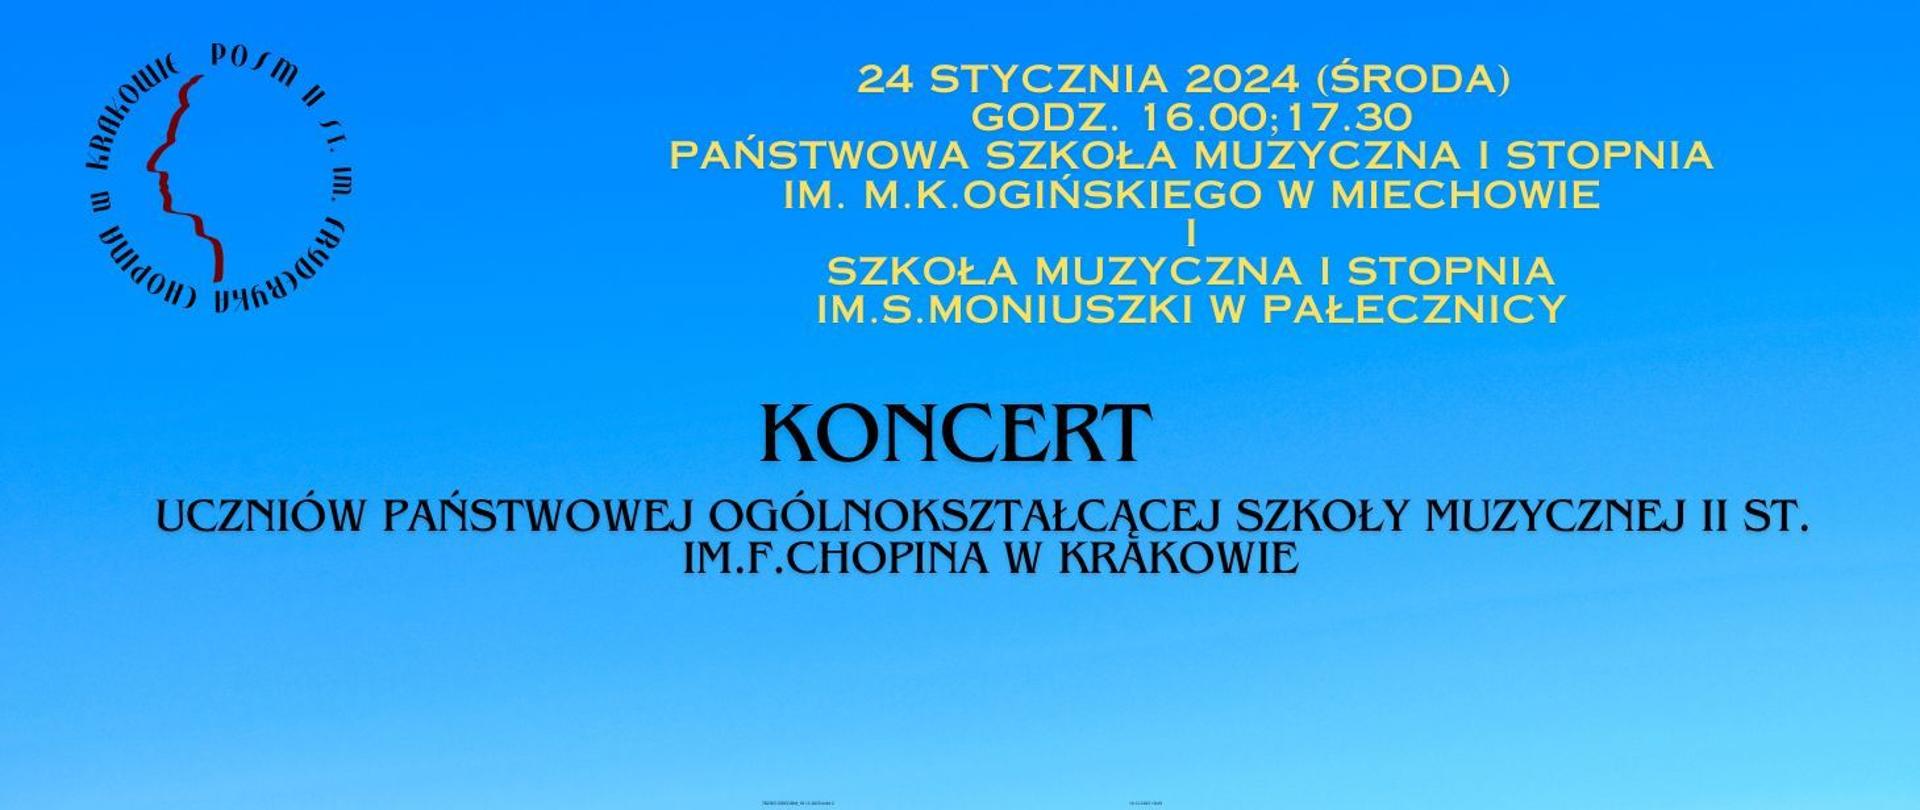 Baner, niebieskie tło, w lewym górnym rogu logotyp szkoły; tekst zapowiada dwa koncerty uczniów naszej szkoły w Miechowie oraz w Pałecznicy 24 stycznia 2024 r.